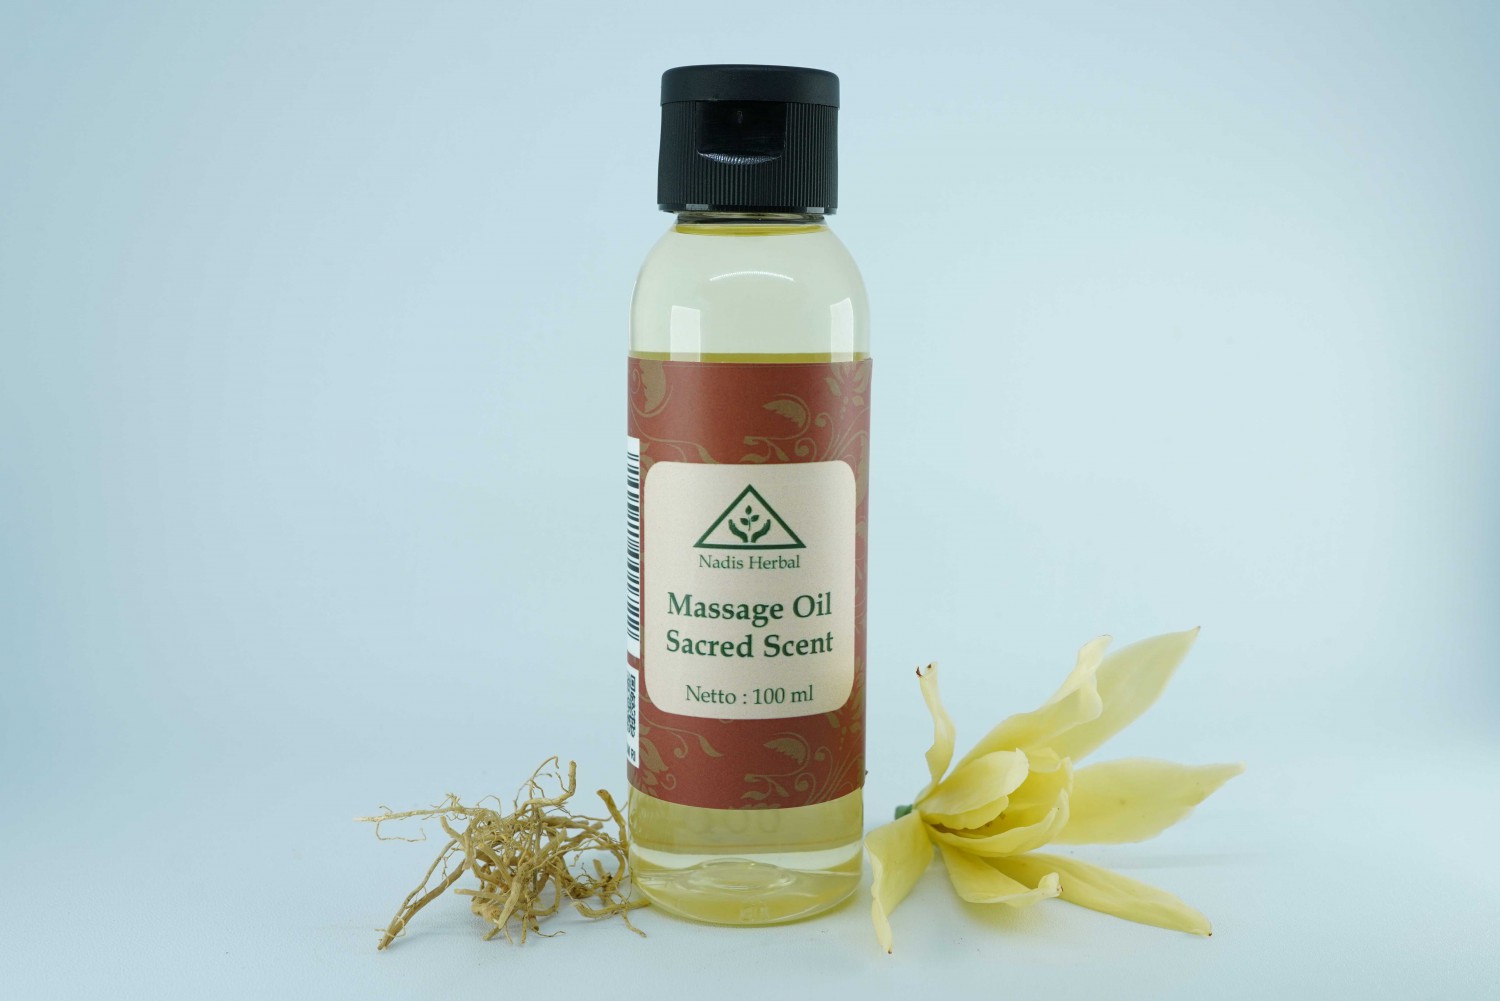 Massage oil sacred scent